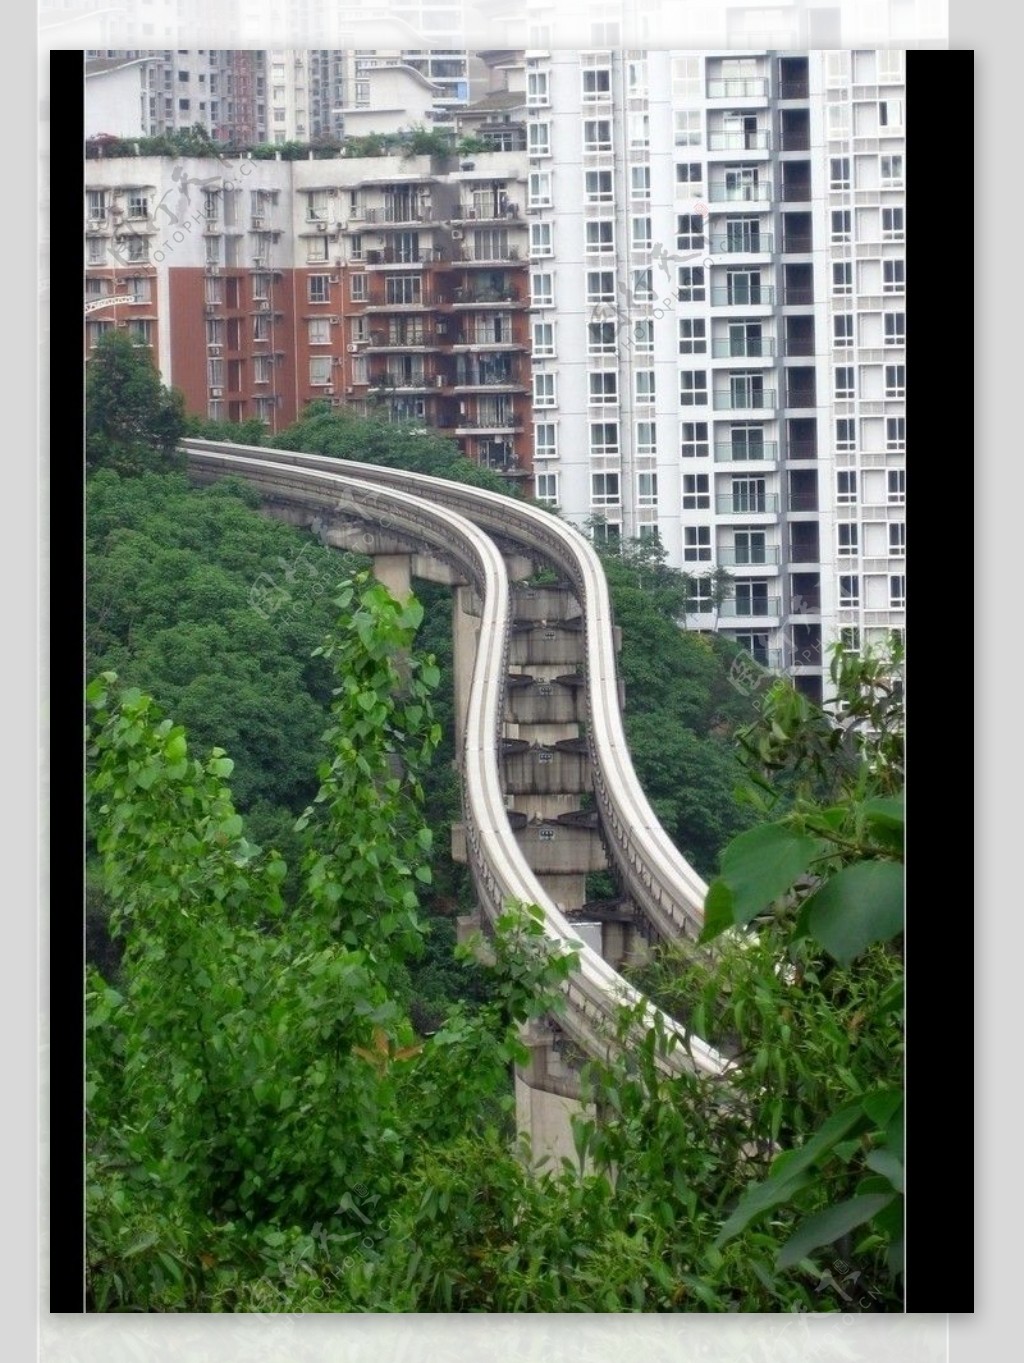 重庆市内景色图片